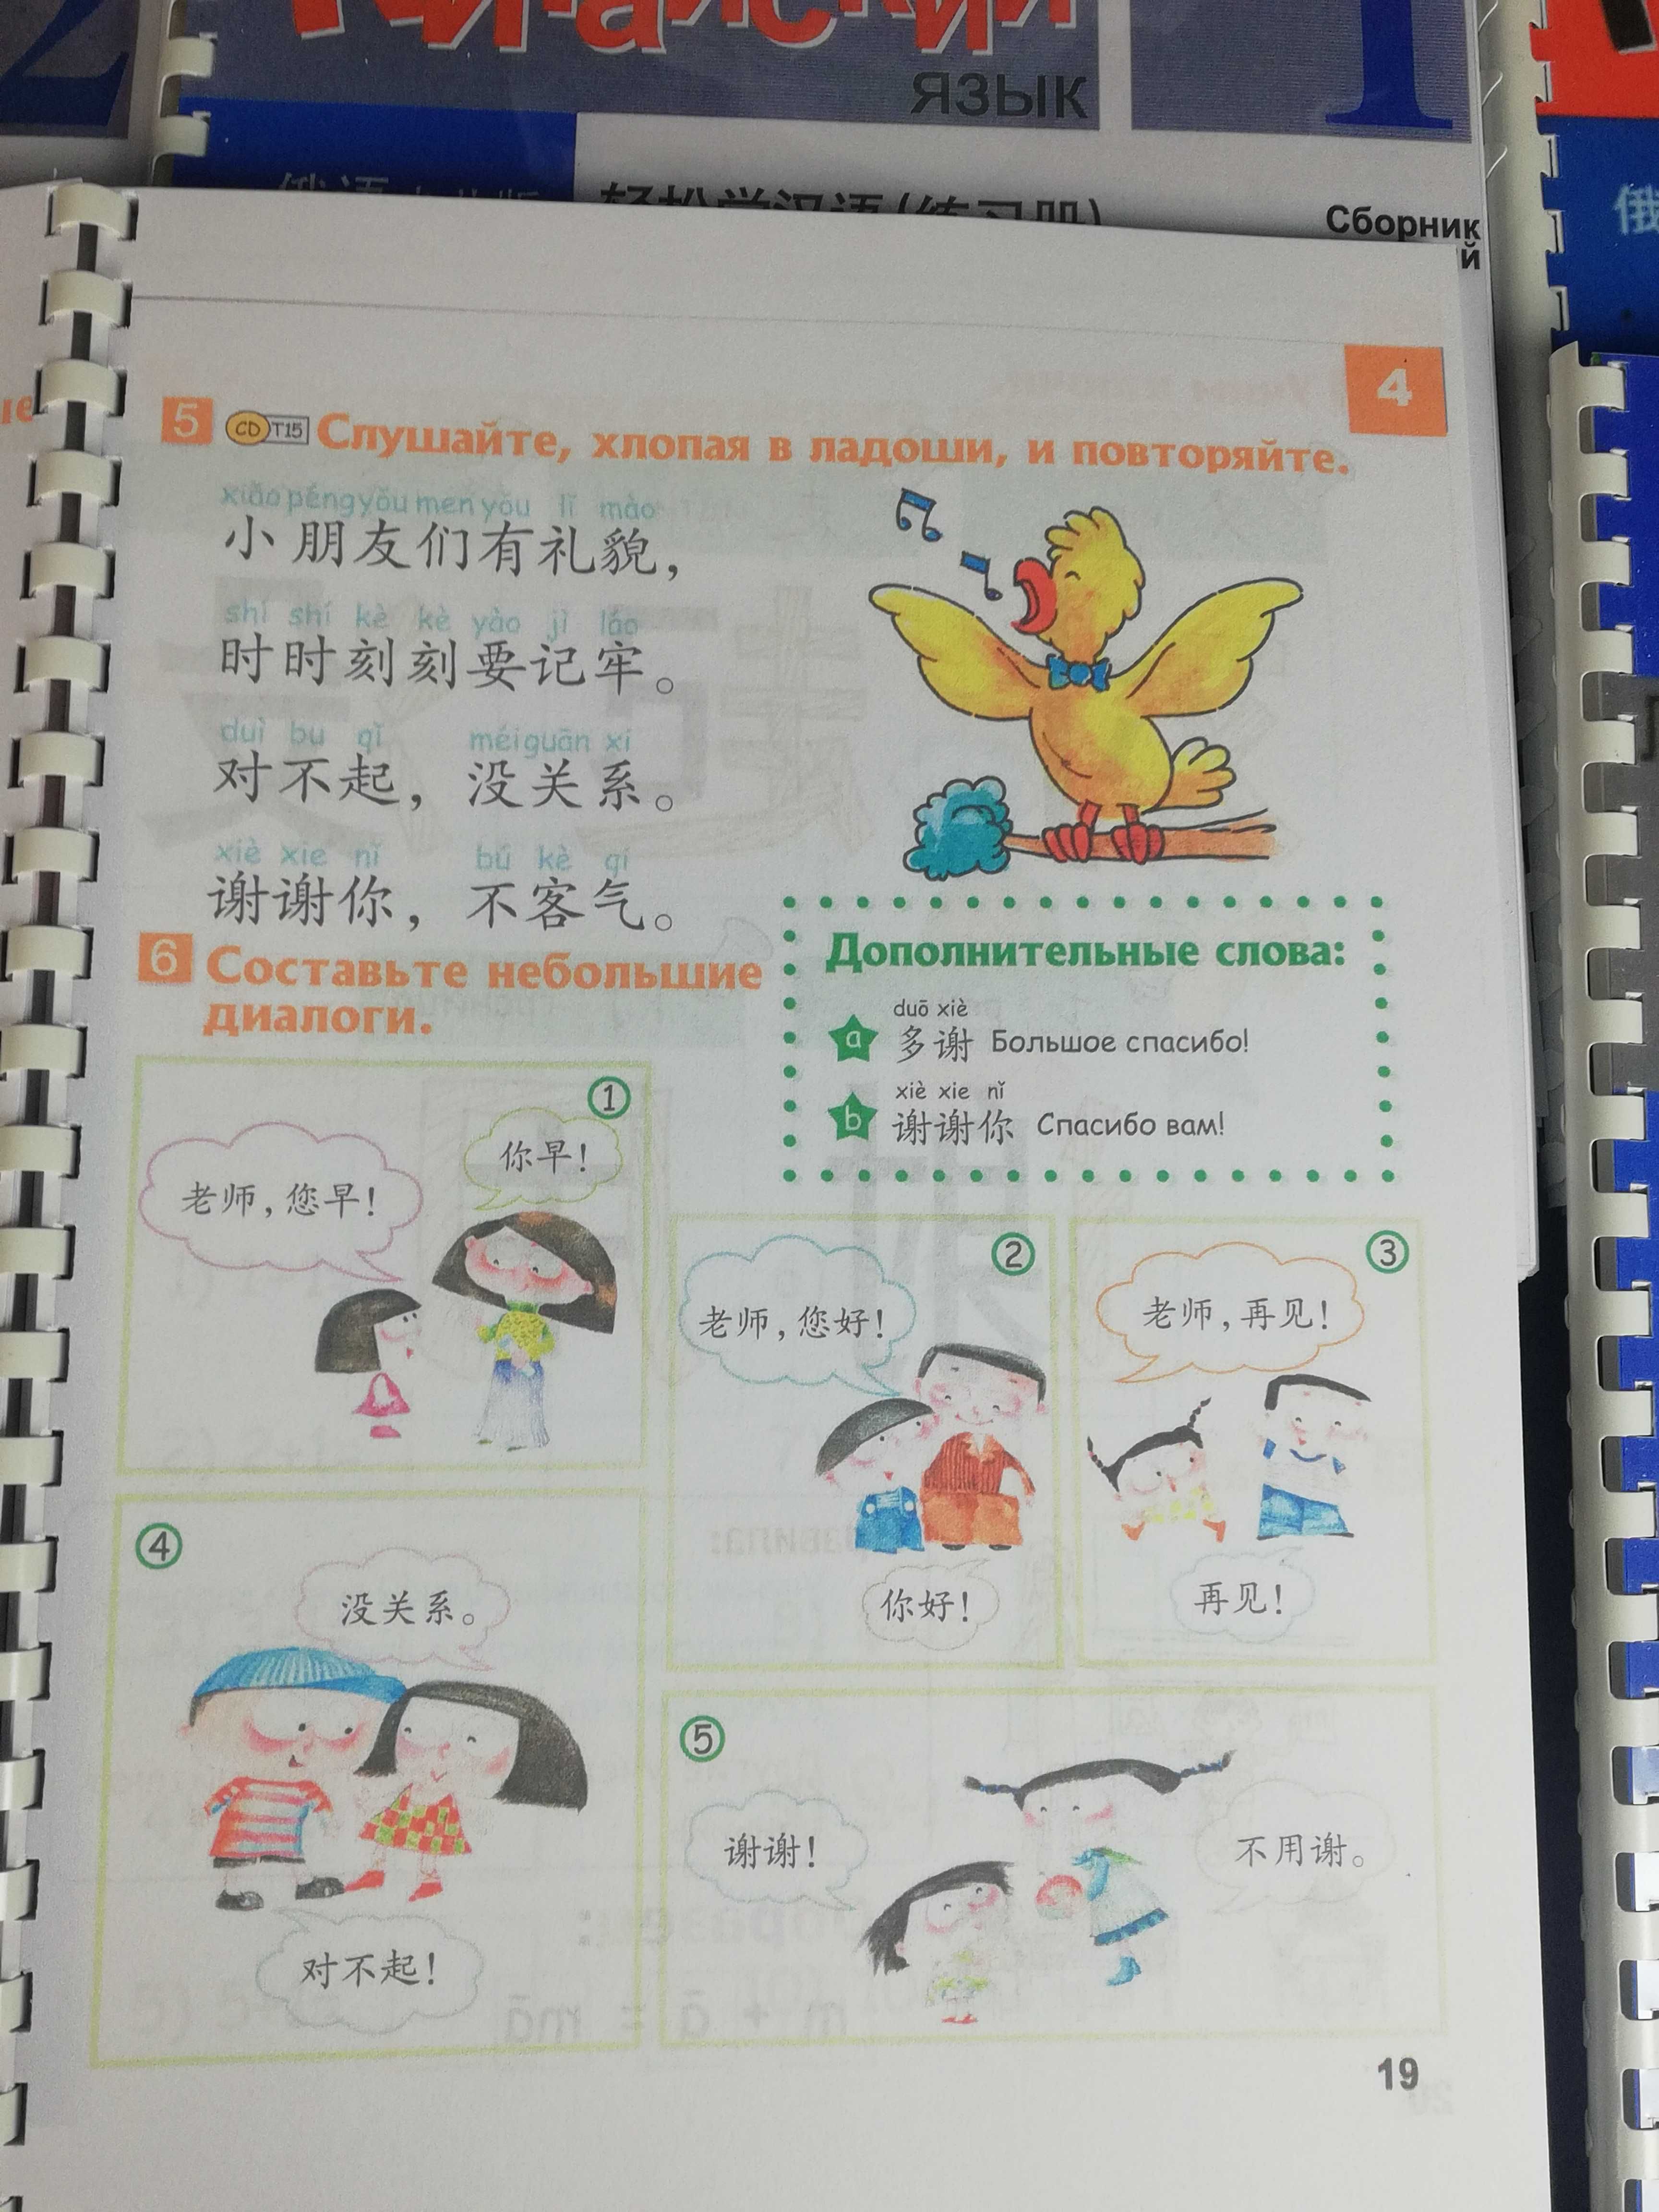 Легкий китайский язык для детей 1,2,3,4 китайська мова для дітей